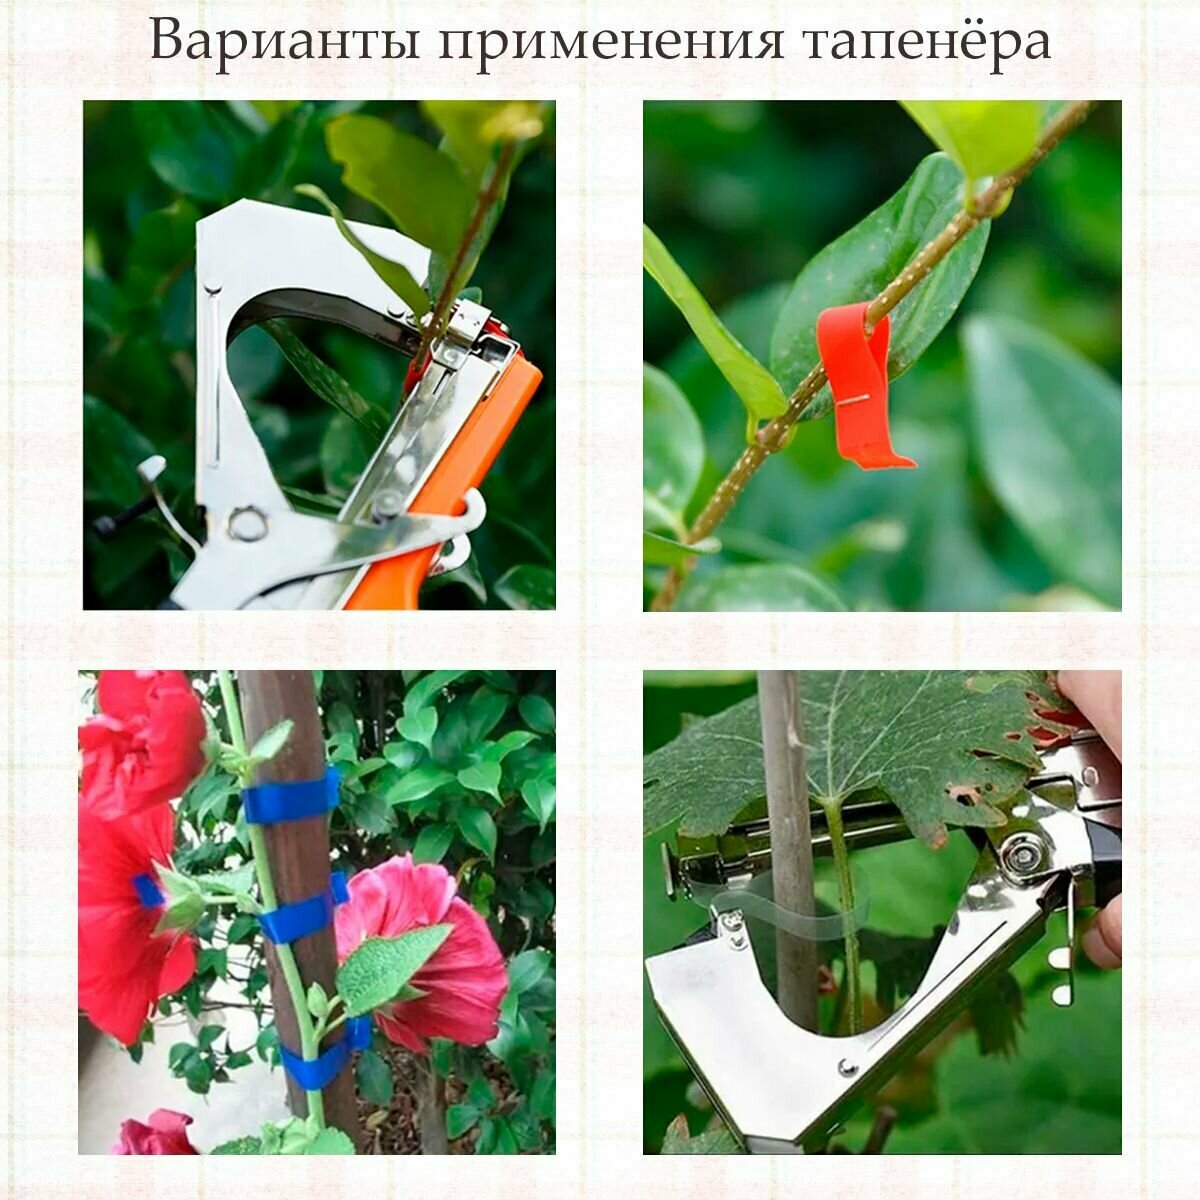 Тапенер садовый (степлер) для подвязки растений в саду и огороде. - фотография № 6